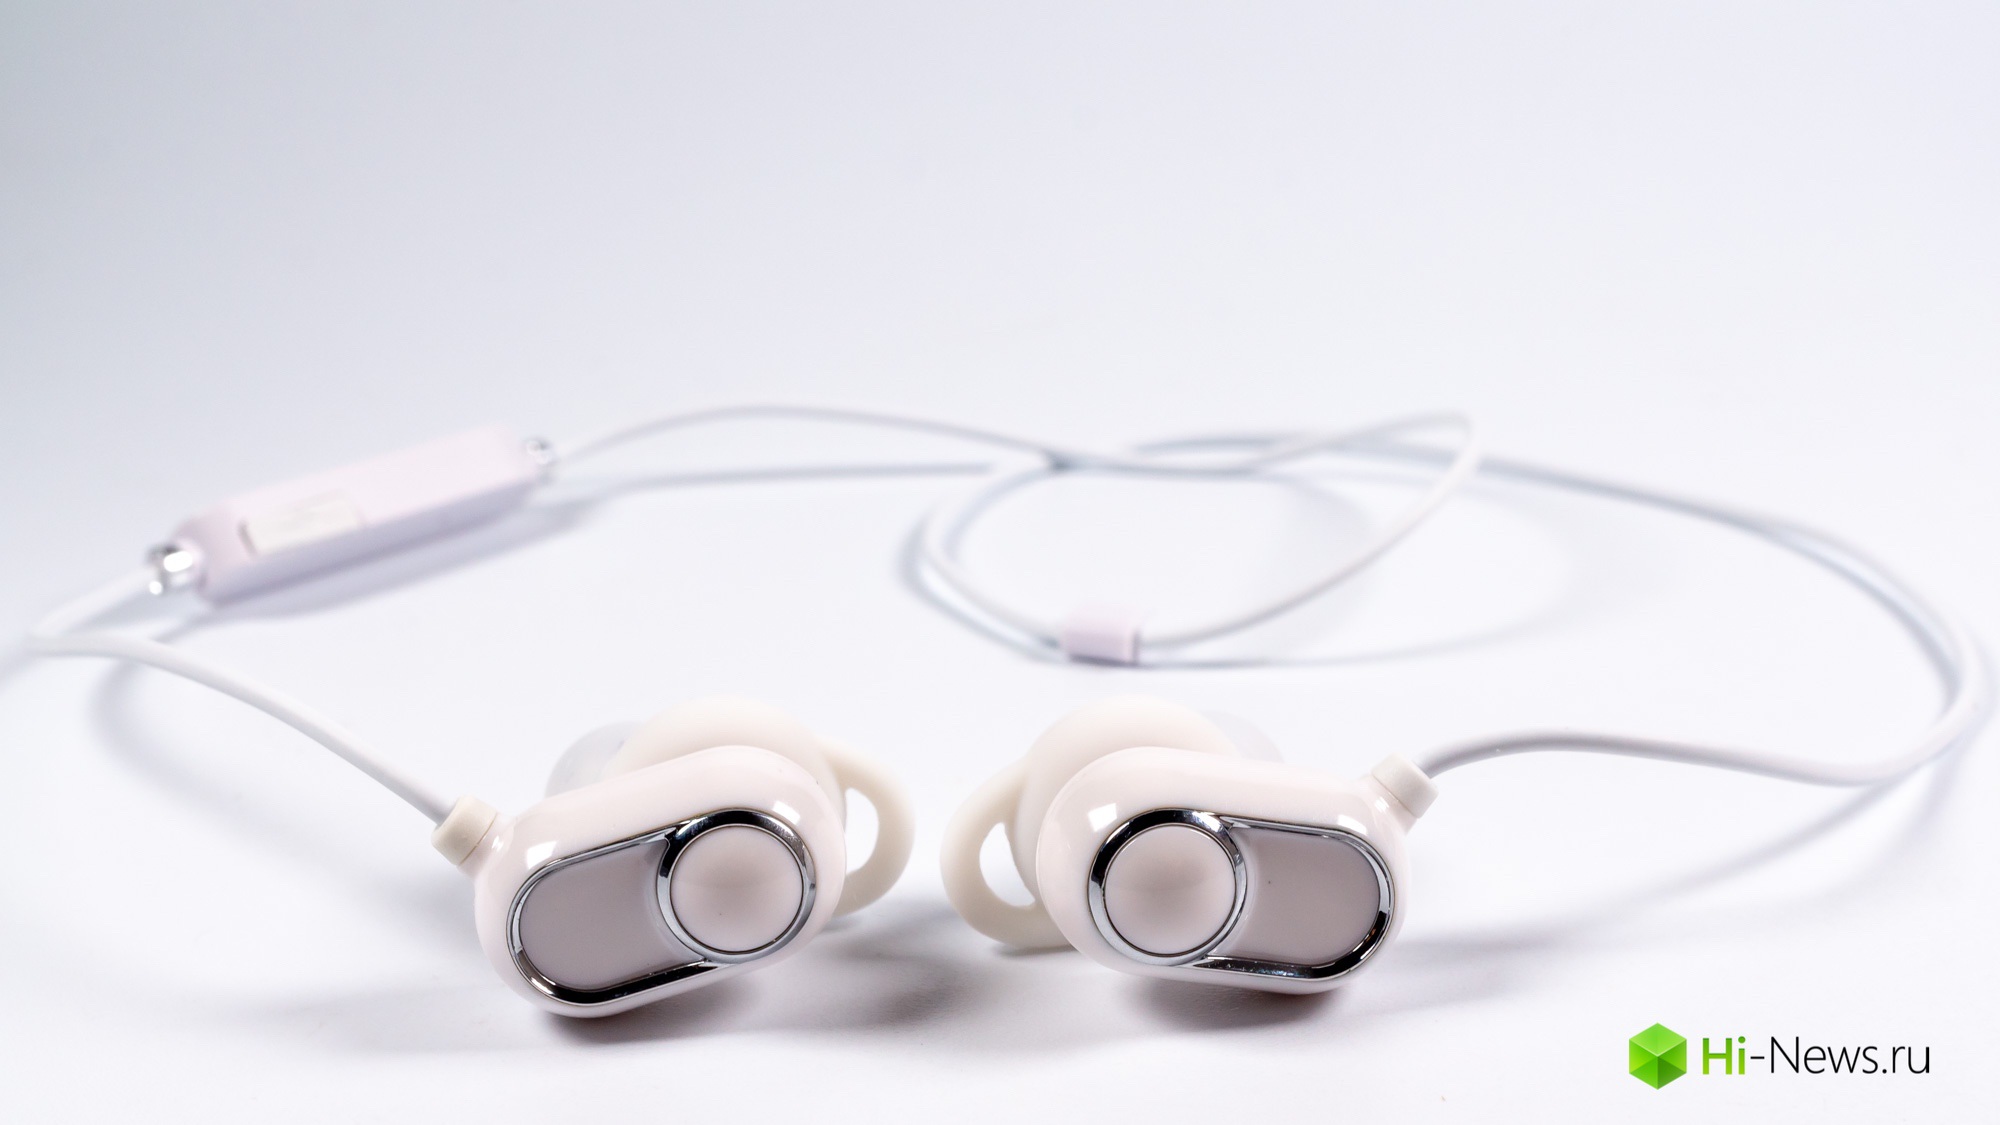 Überprüfen Sie die drahtlose Kopfhörer-FiiO FB1 und Bluetooth Receiver µBTR